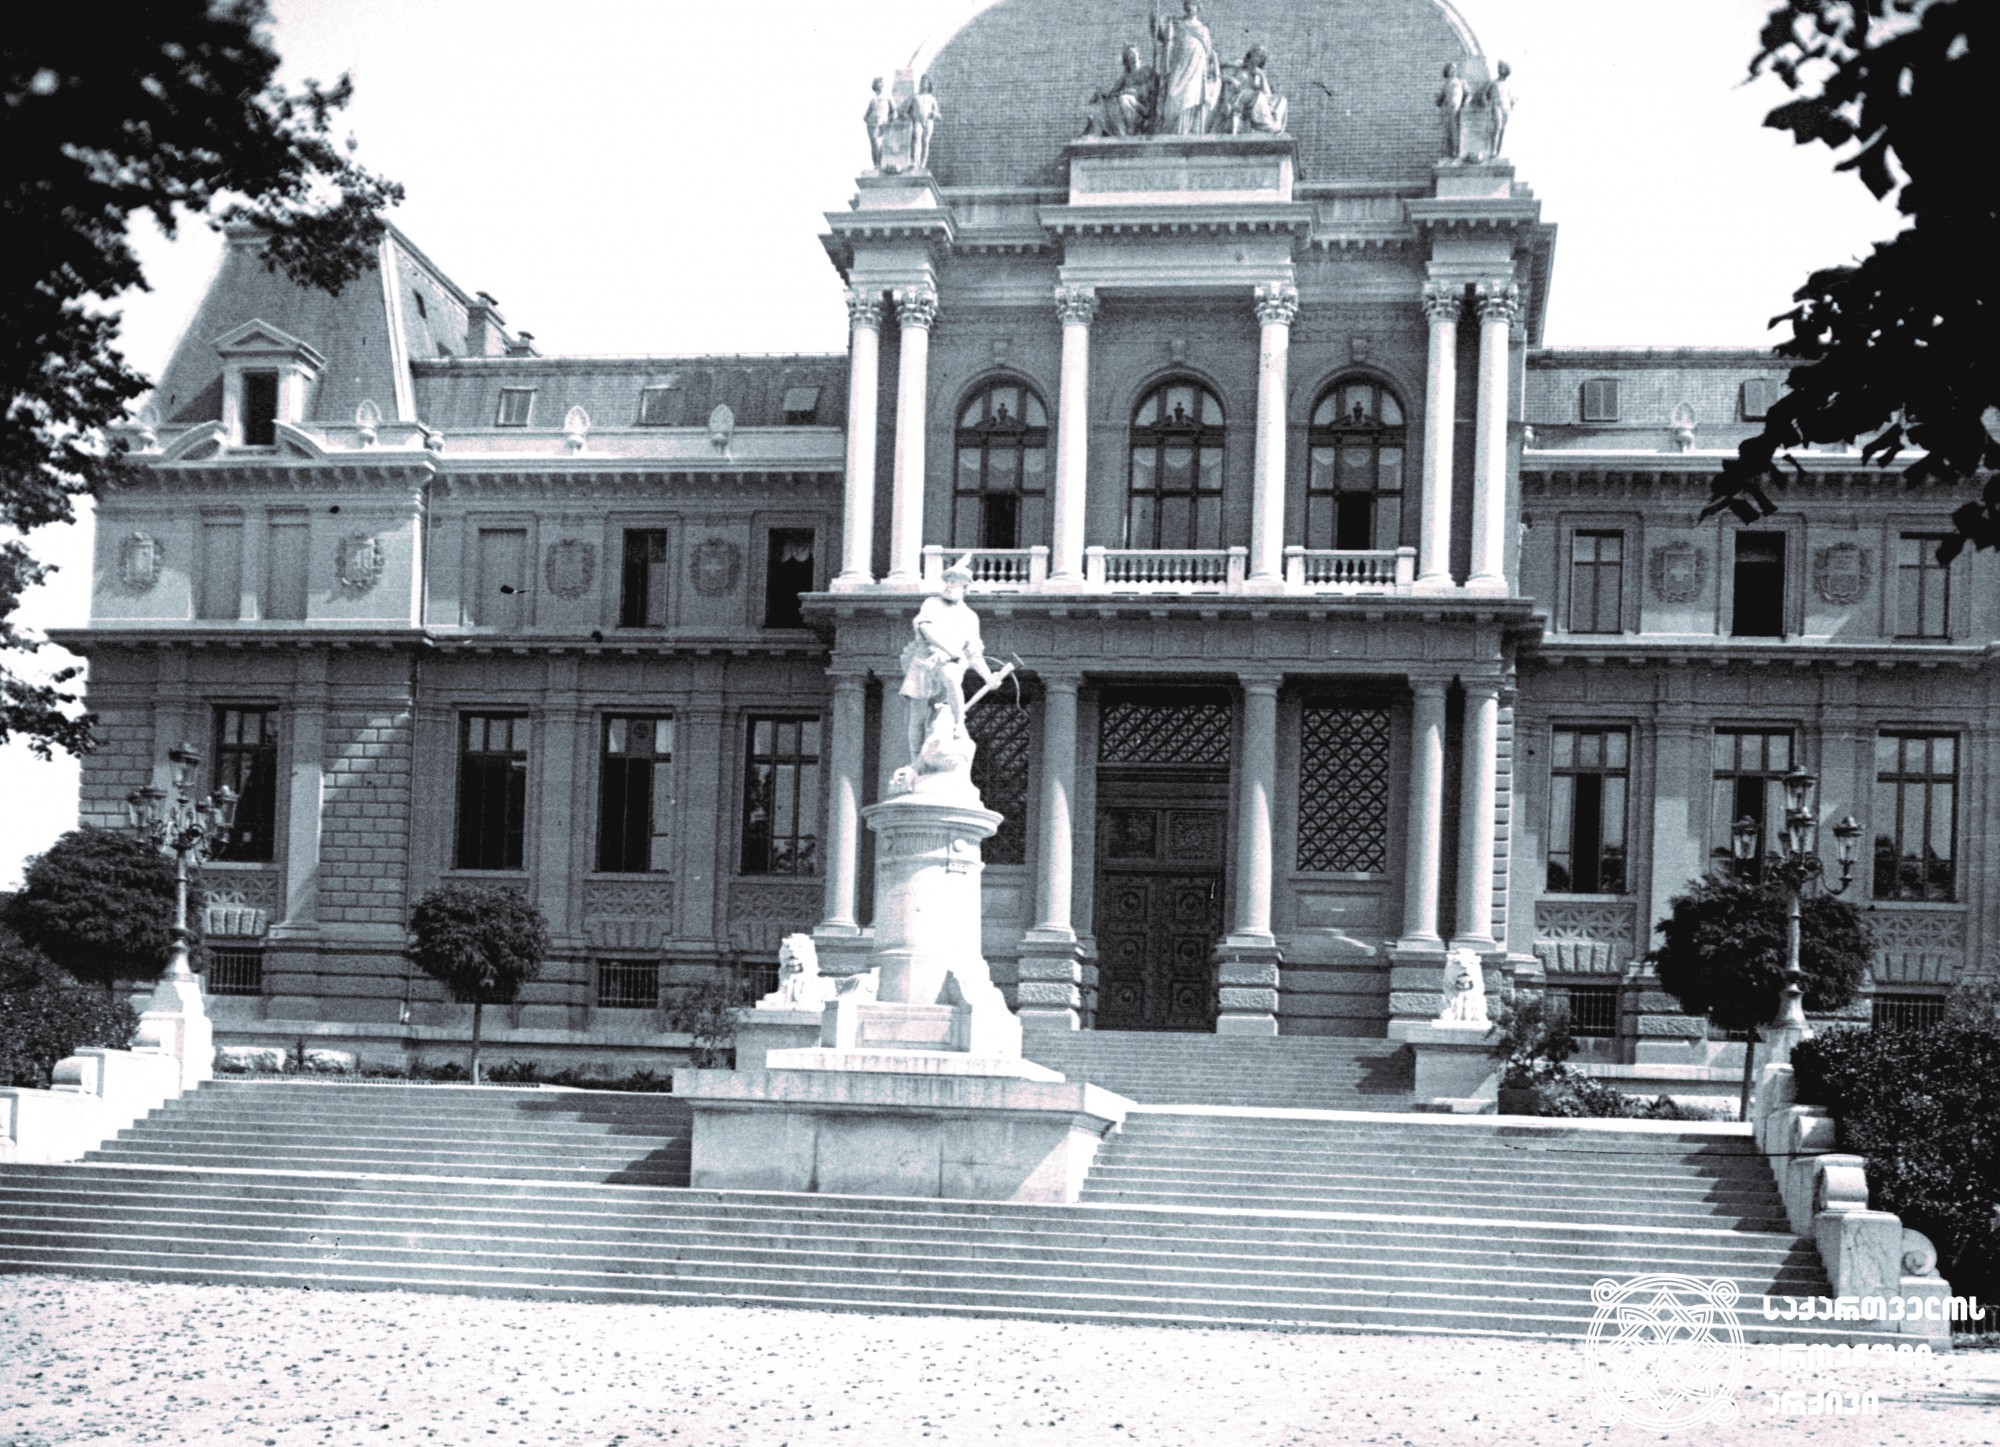 1909 წელი. შვეიცარია, ქალაქი ლოზანა. <br>
დაცულია საქართველოს ეროვნულ არქივში. <br>
1909. Switzerland, Lausanne. <br>
Preserved at the National Archives of Georgia